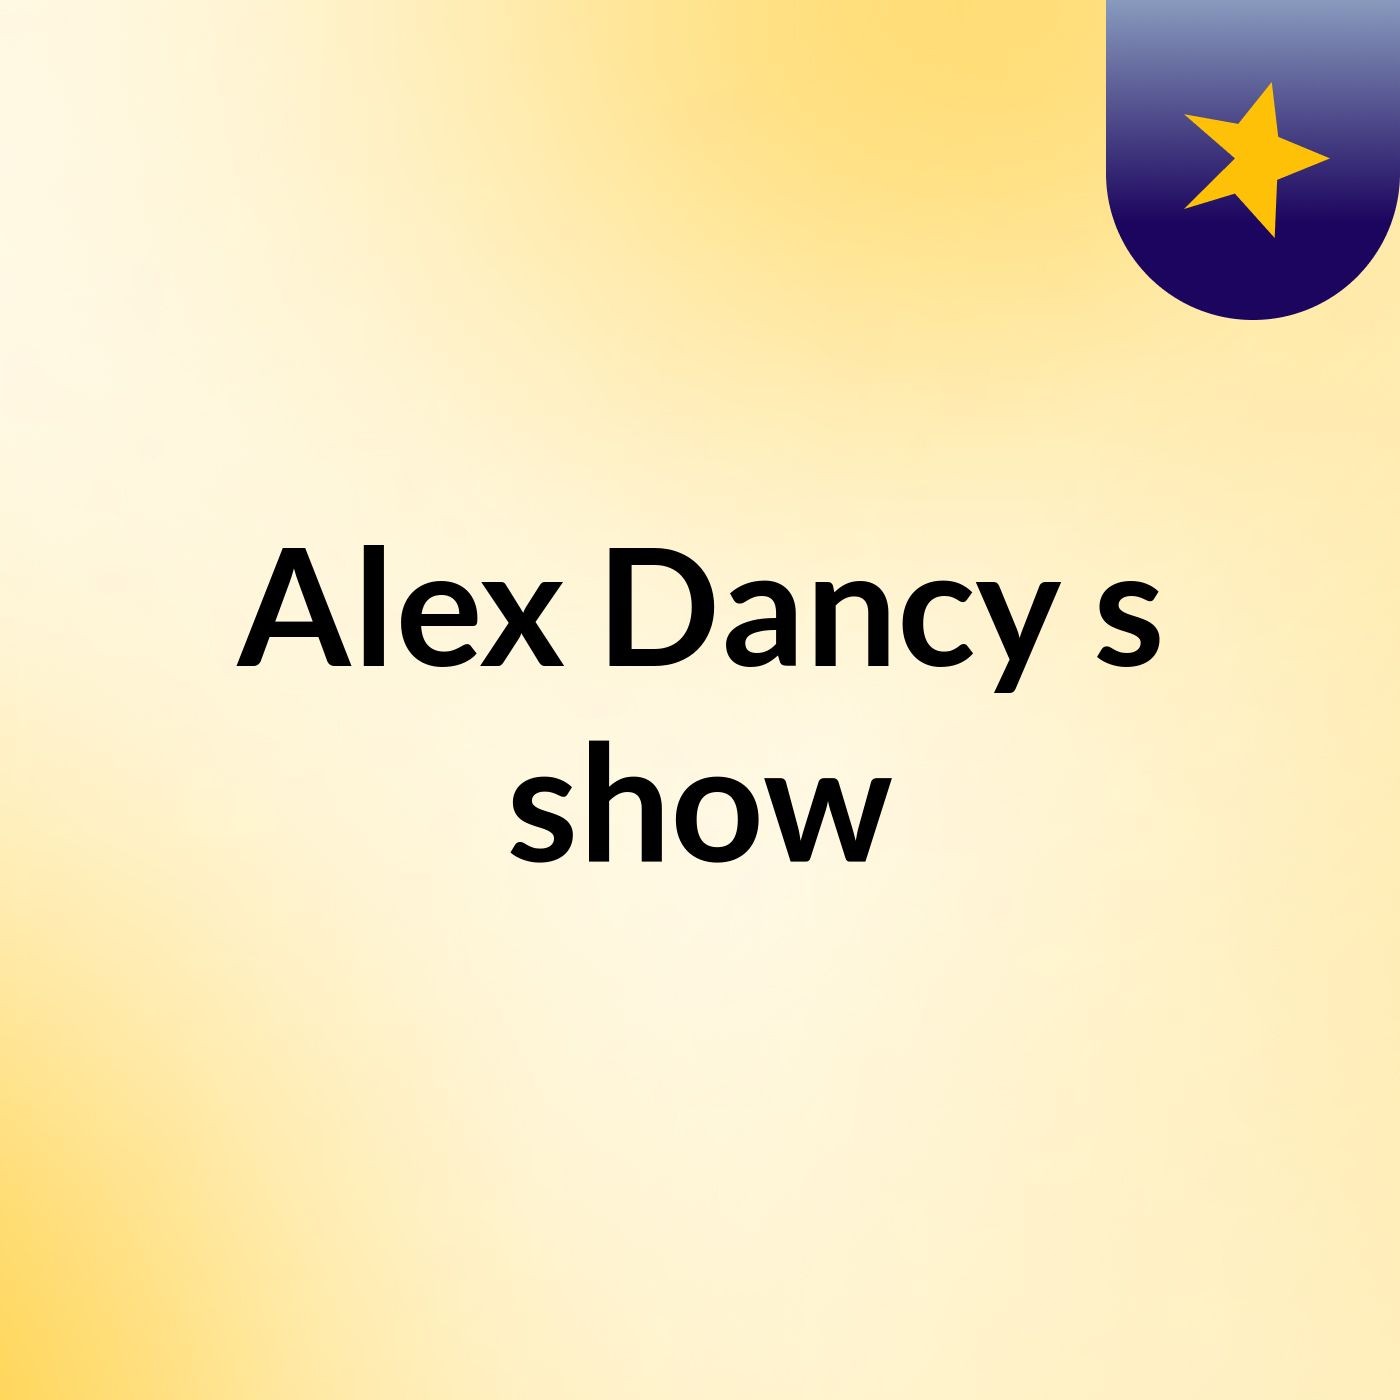 Alex Dancy's show